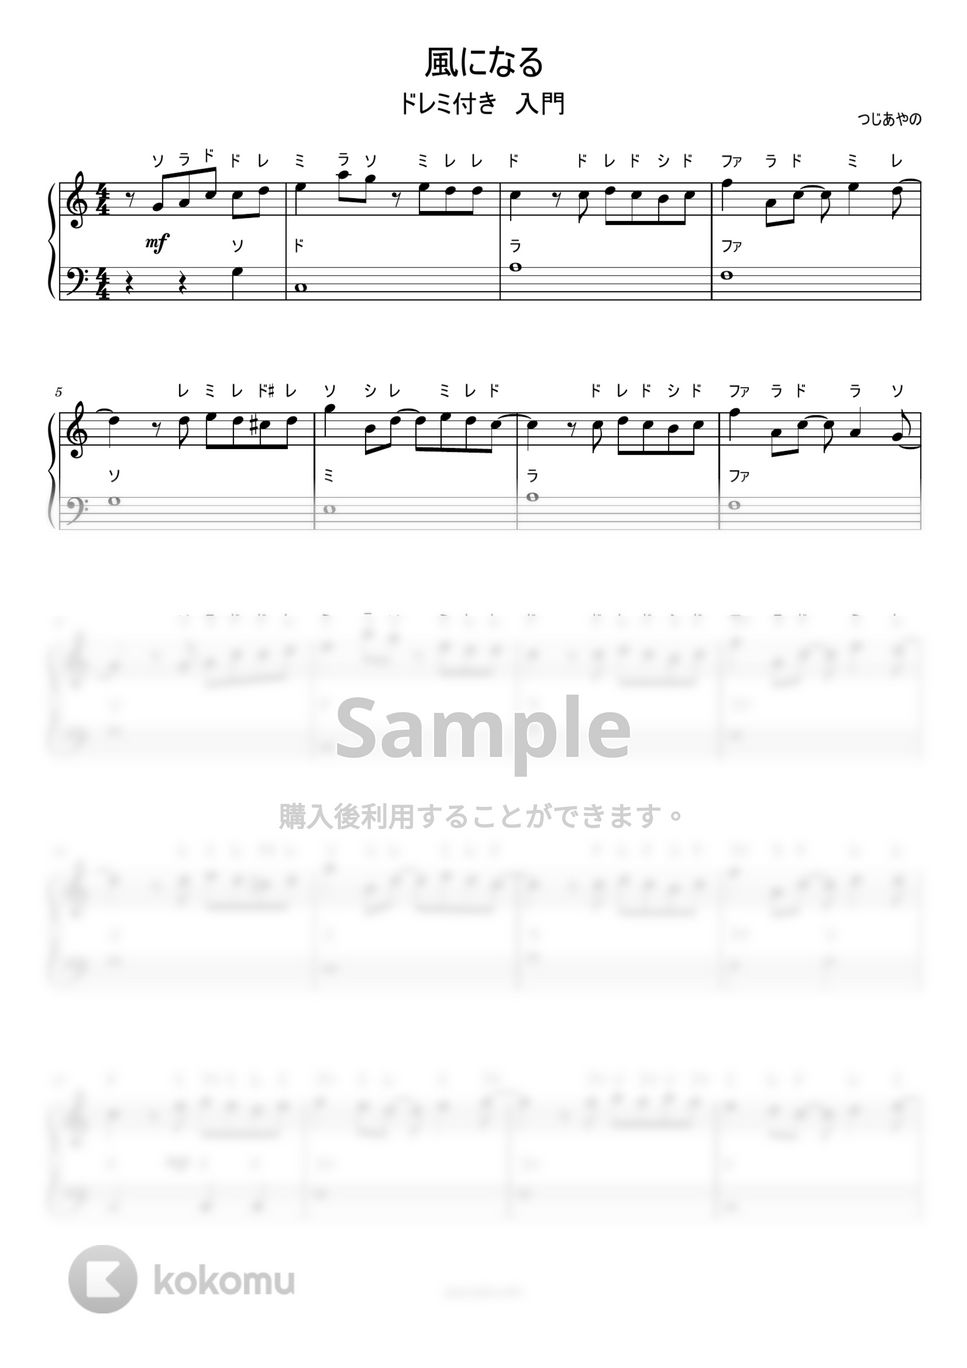 つじあやの - 風になる (ドレミ付き簡単楽譜) by ピアノ塾